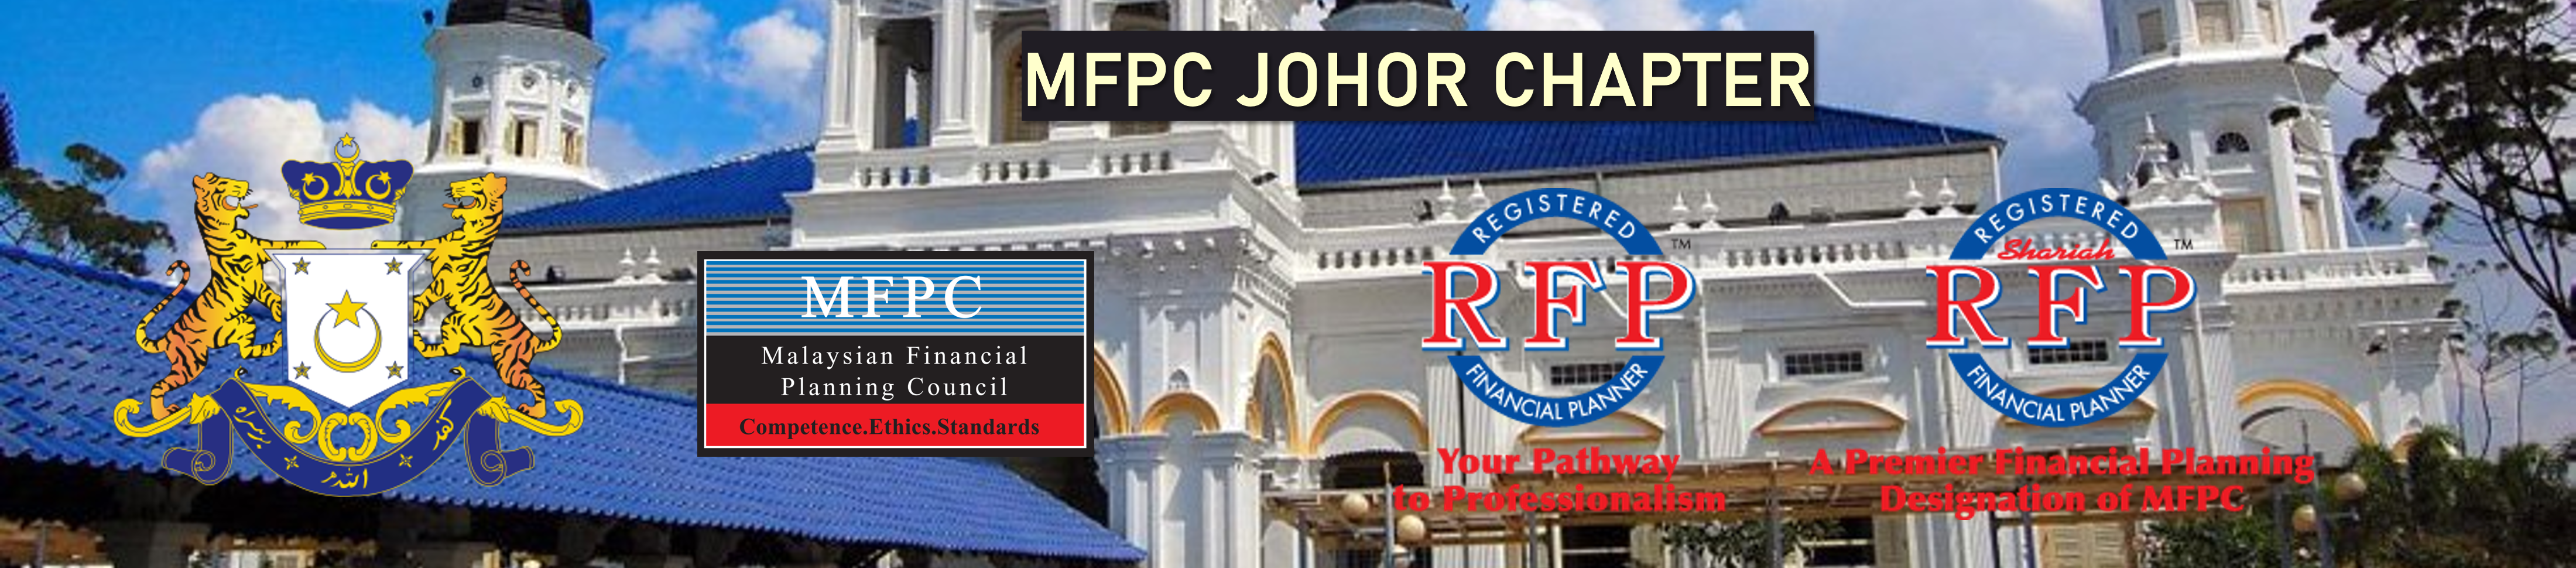 Johor Banner